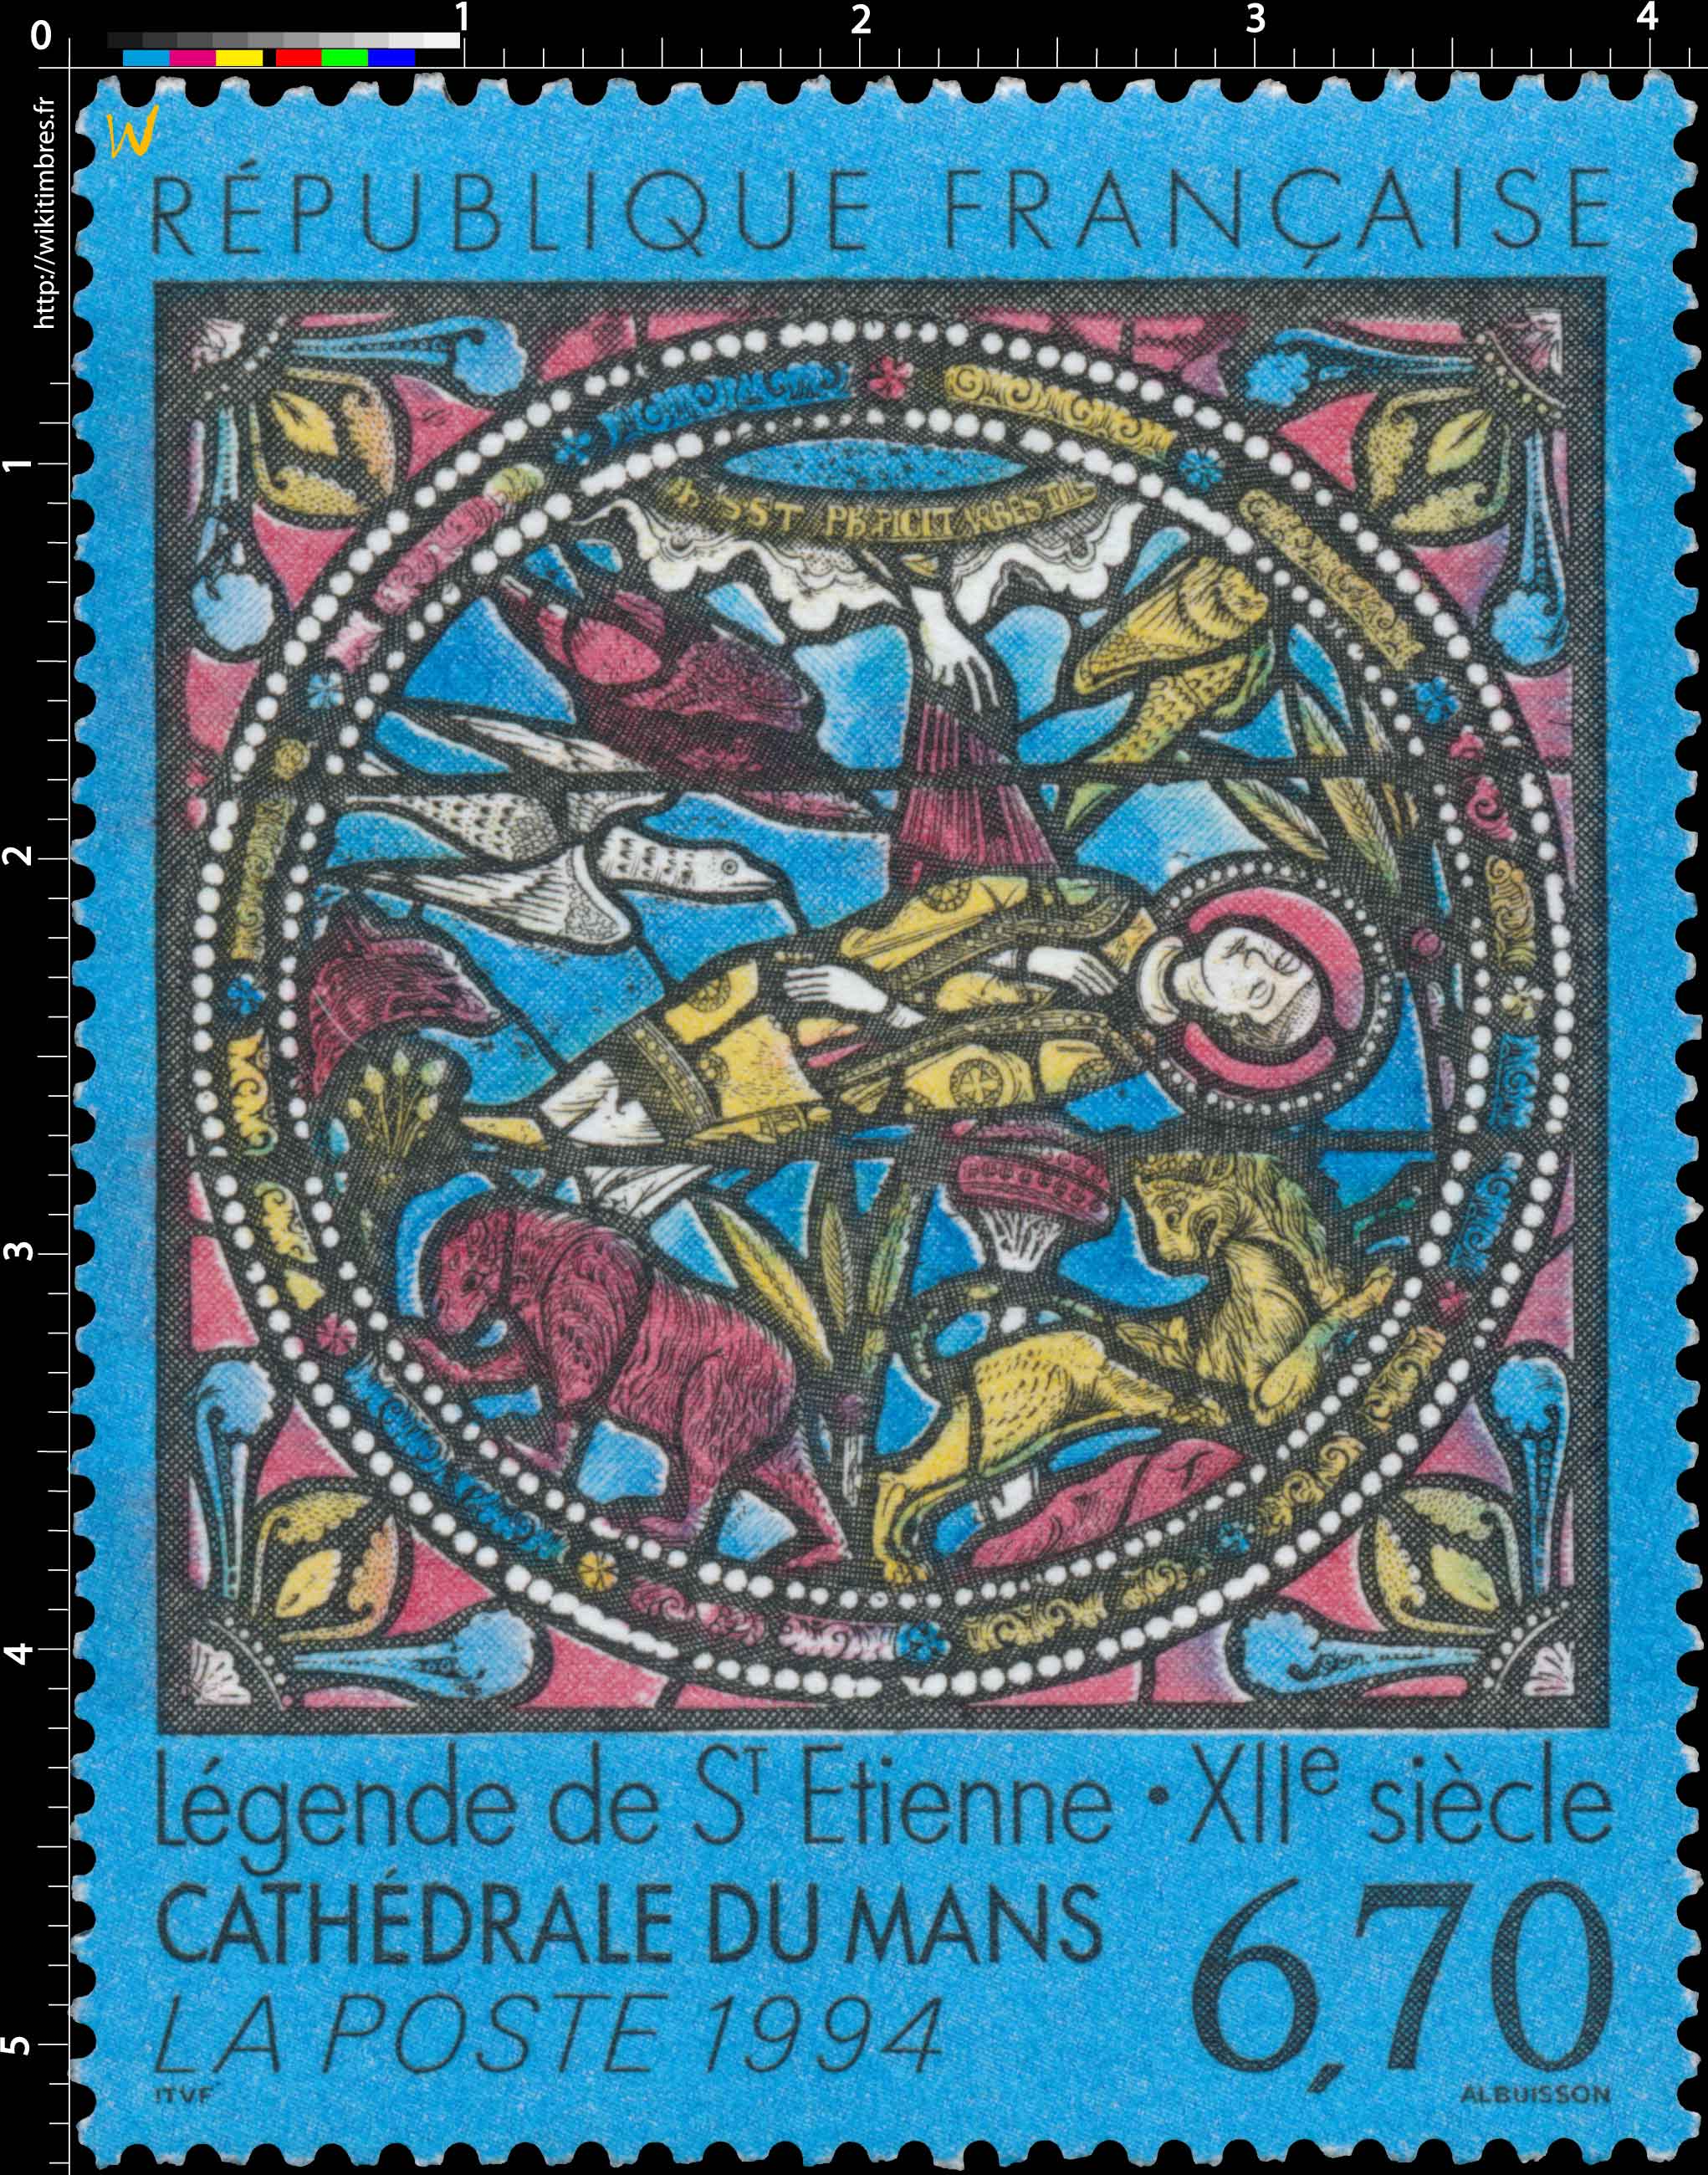 1994 Légende de St Etienne - XIIe siècle CATHÉDRALE DU MANS